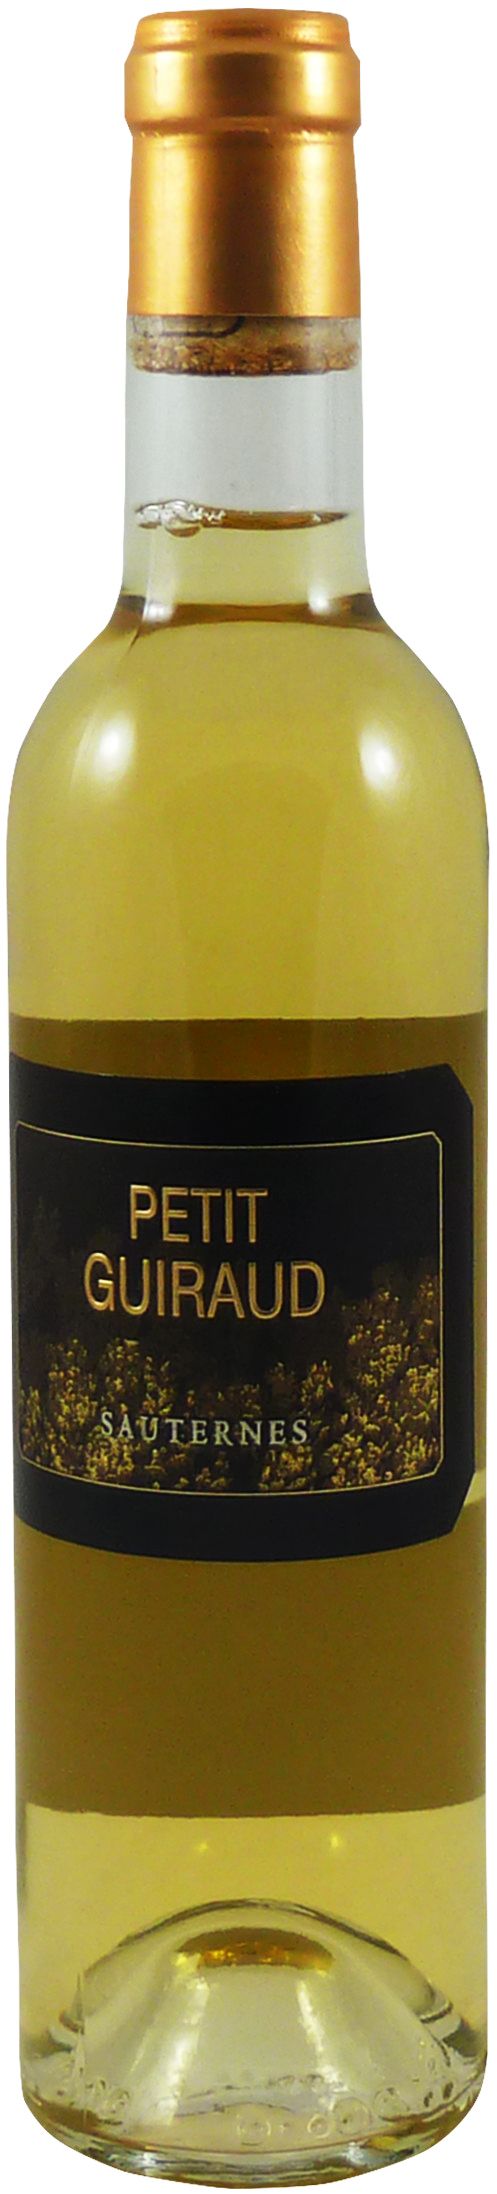 Petit Guiraud, 2010